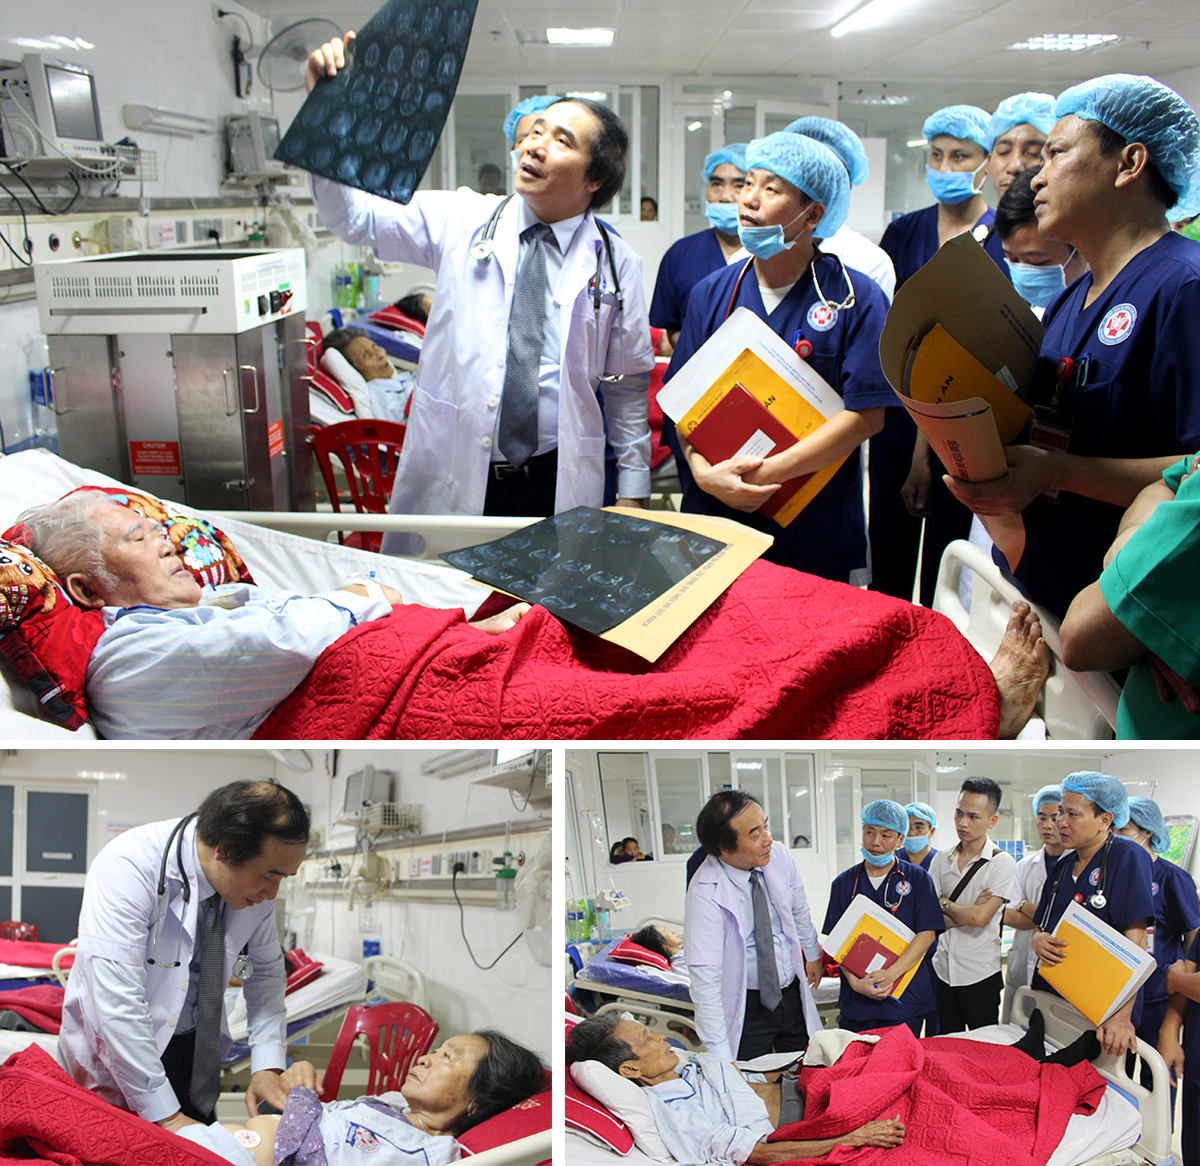  PGS.TS. Nguyễn Văn Chi trực tiếp thăm khám bệnh nhân, hướng dẫn nguyên tắc, kỹ thuật xử lý cấp cứu ban đầu đối với từng trường hợp bệnh cho đội ngũ y bác sĩ Bệnh viện Đa khoa Cửa Đông.